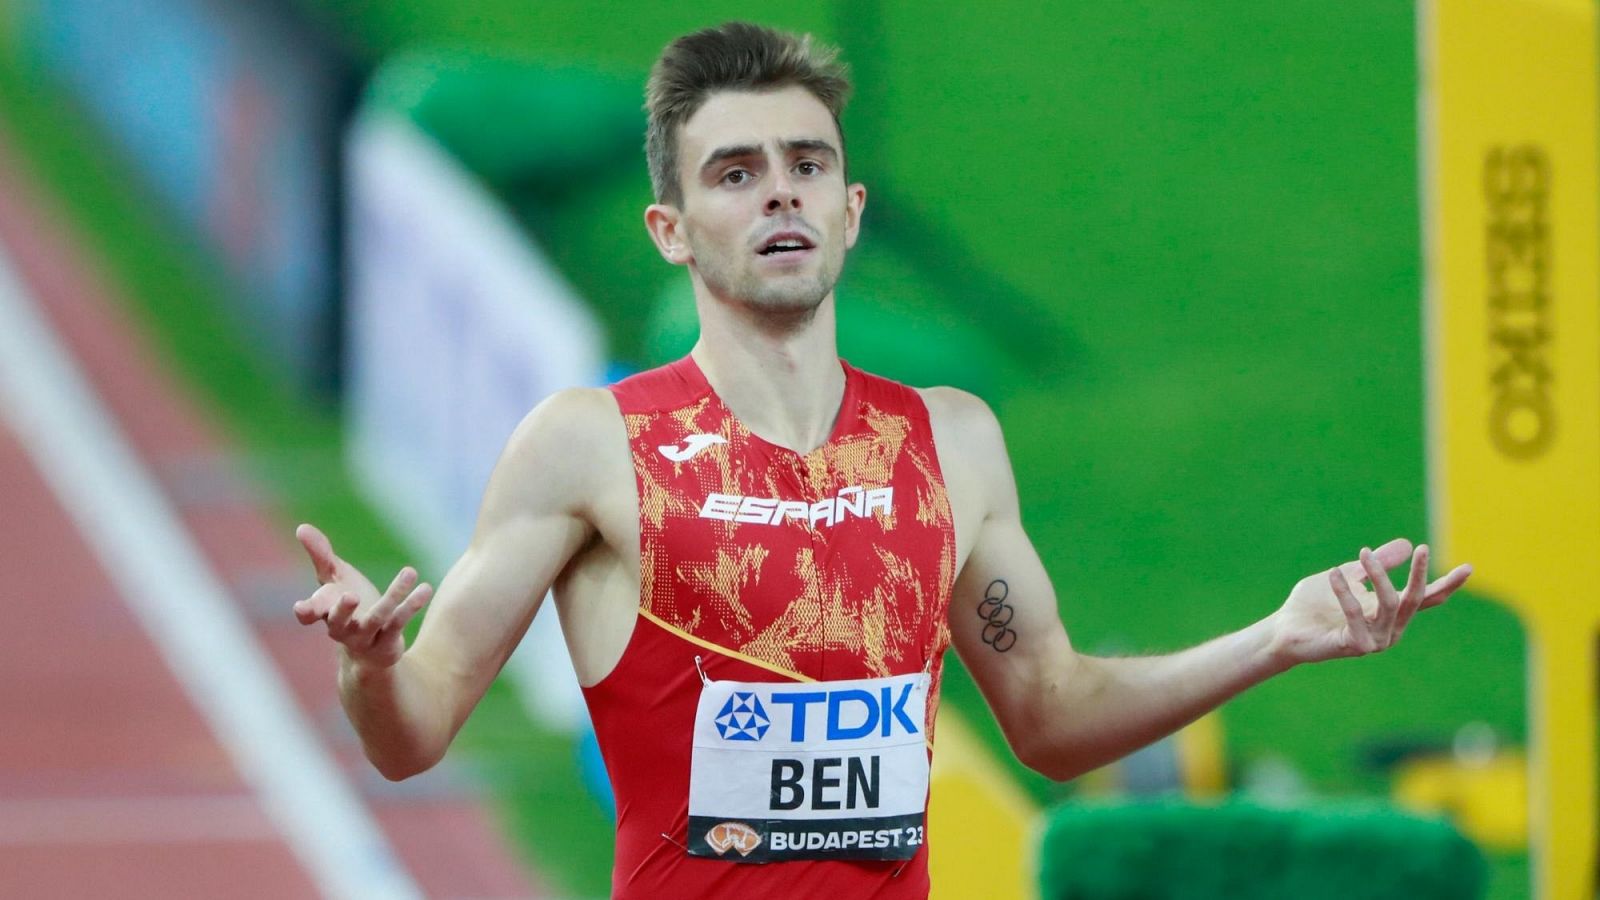 Mundial atletismo | Adrián Ben se queda a ocho centésimas del bronce mundial en los 800m